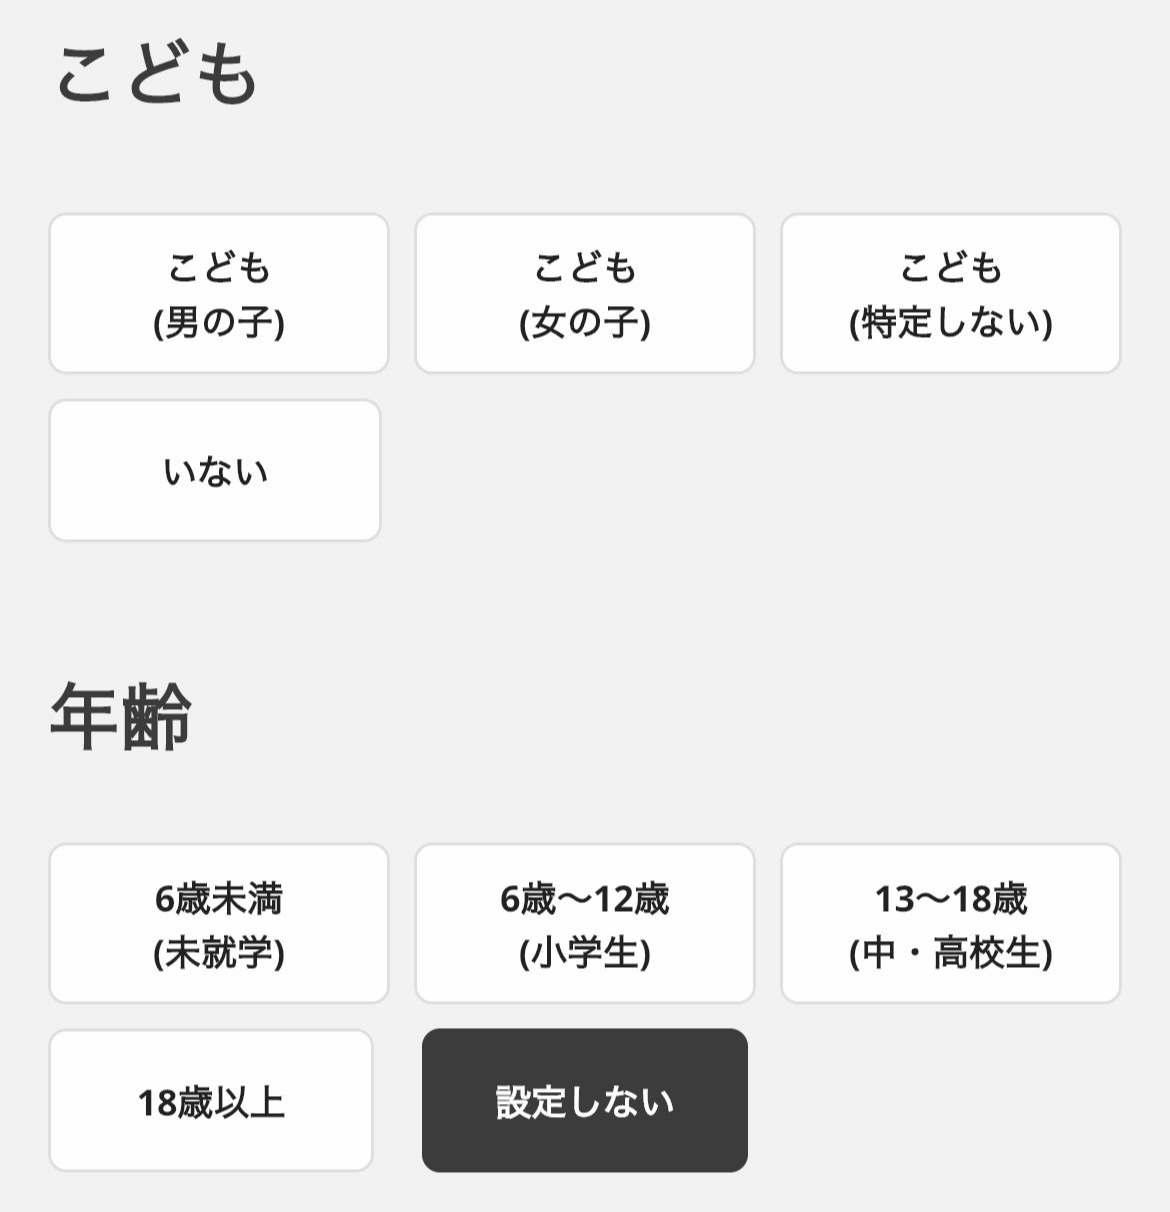 일본 매칭 앱 ‘코아리’의 자녀 관련 입력란. 매칭투데이